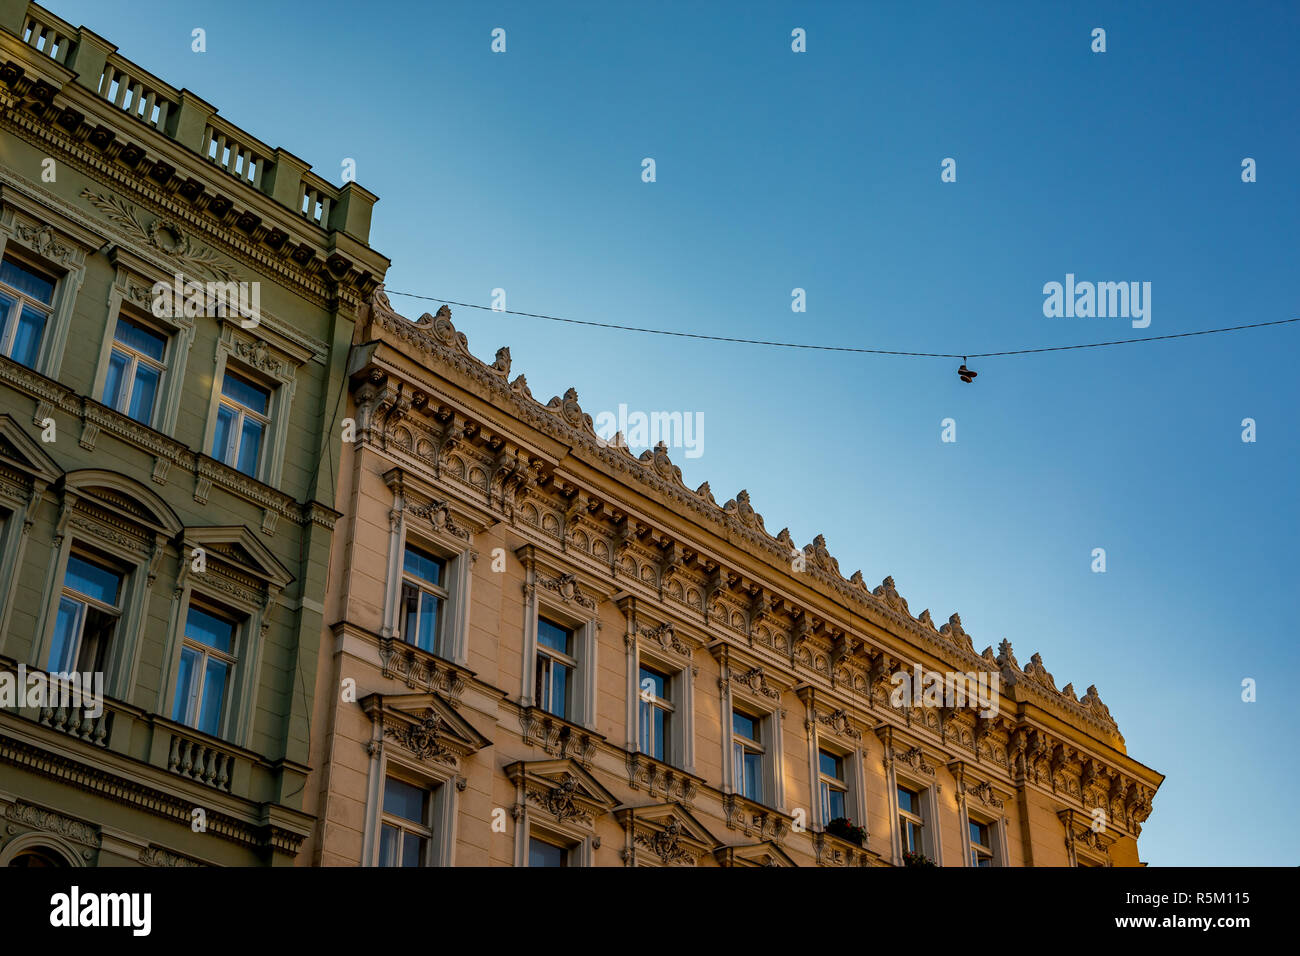 Gegenüberstellung. Paar Turnschuhe hängen hoch über Stadt Straße in der Altstadt von Prag, der Hauptstadt der Tschechischen Republik, neben antiken Haus Stockfoto